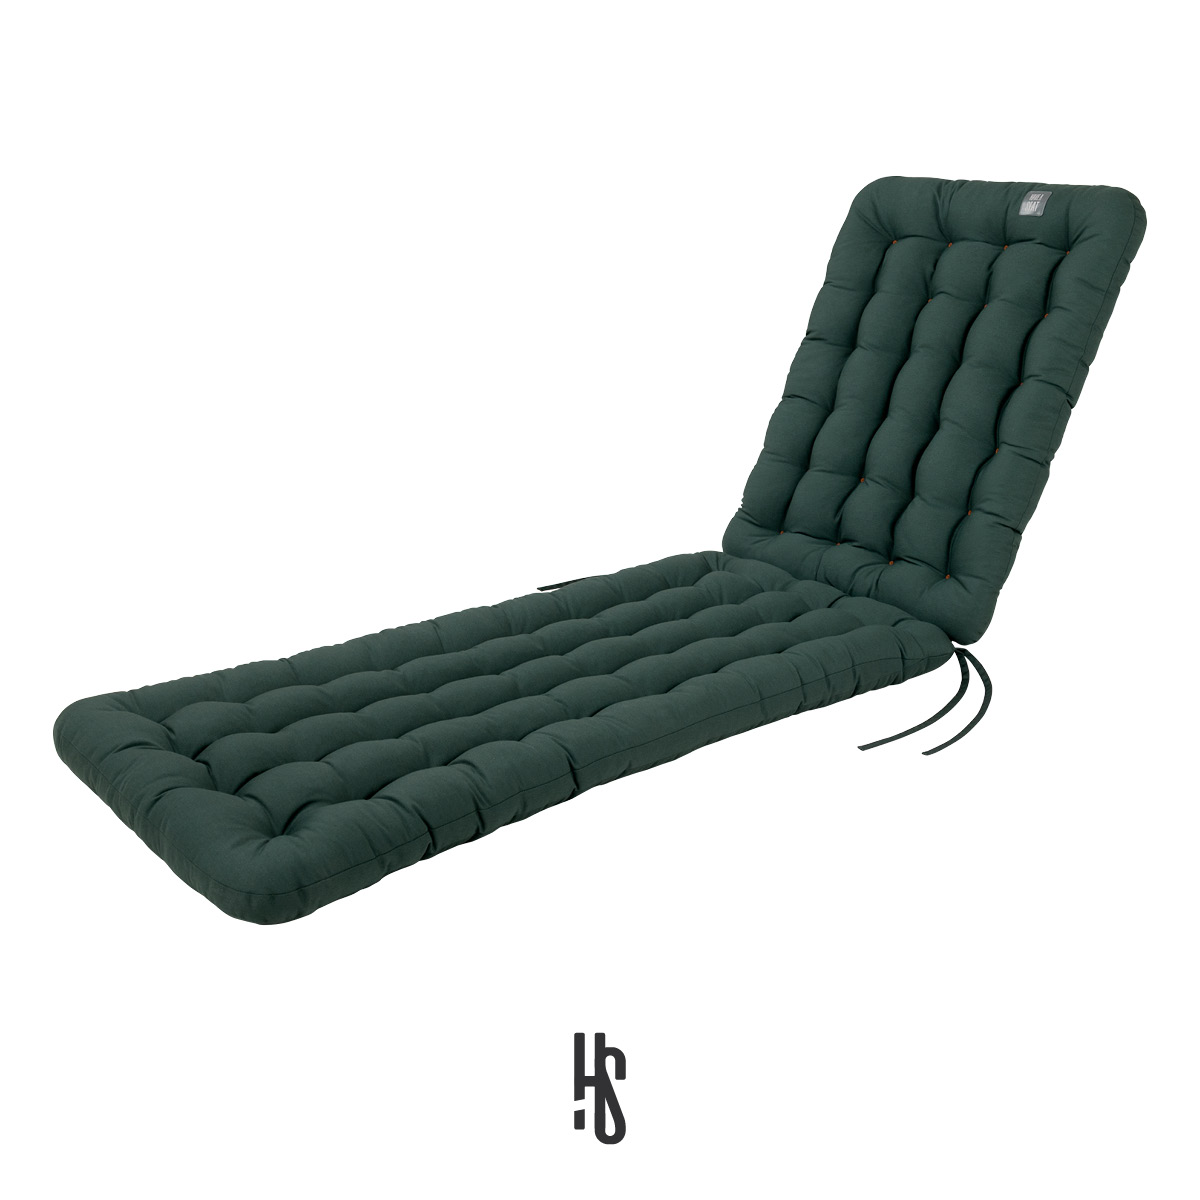 Auflage für Deckchair / Liegestuhl / Relaxstuhl Moosgrün mit Premium-Sitz-/Liegekomfort inkl. orthopädisches Outdoor Nackenkissen | HAVE A SEAT Living